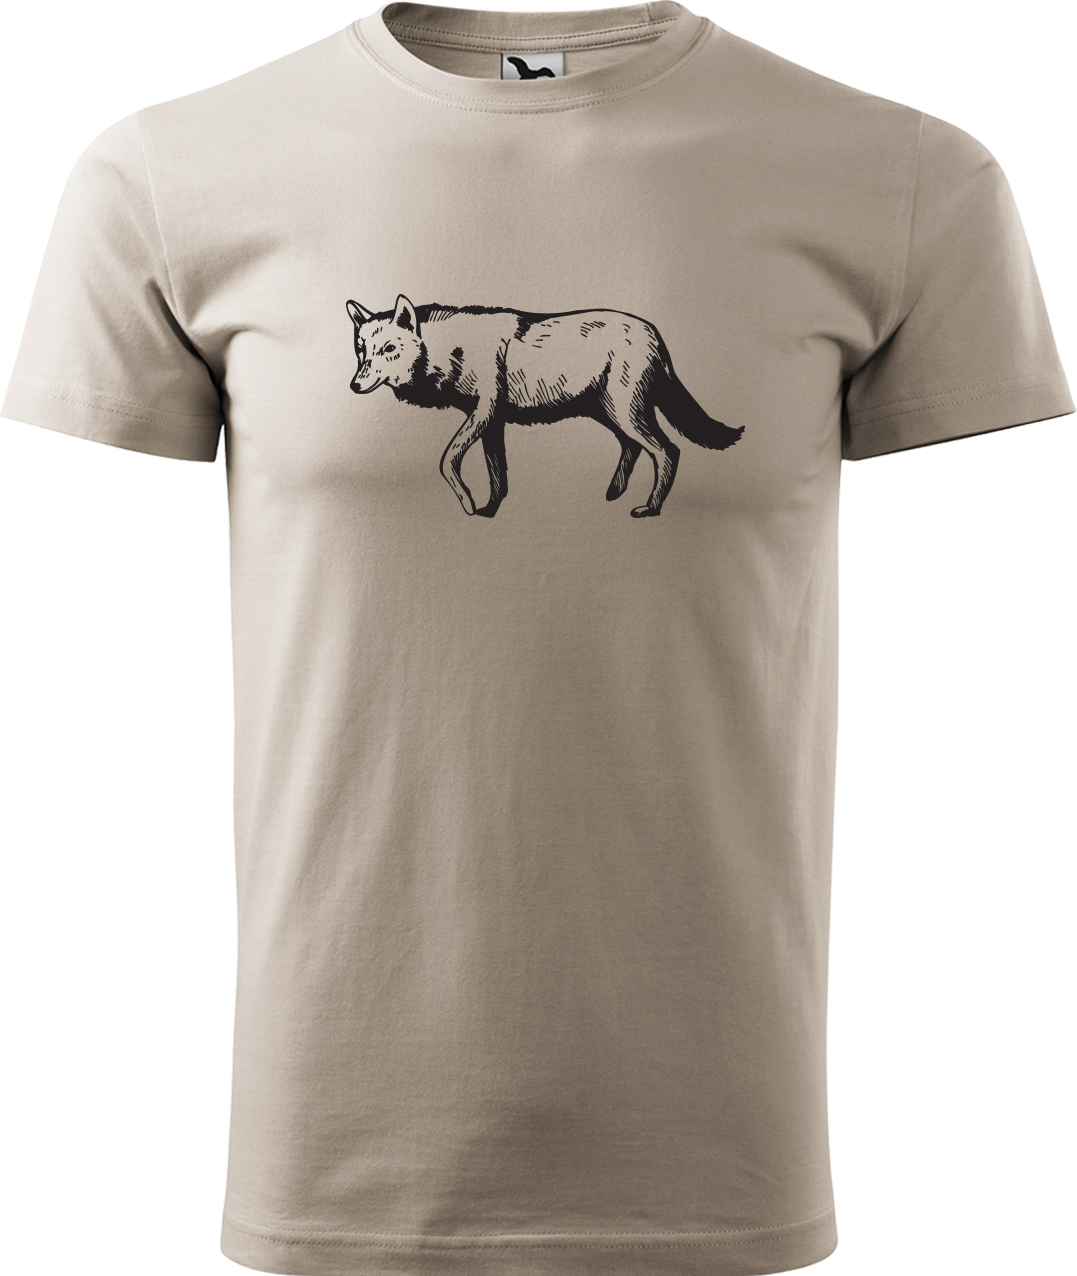 Pánské tričko s vlkem - Vlk Velikost: M, Barva: Ledově šedá (51), Střih: pánský